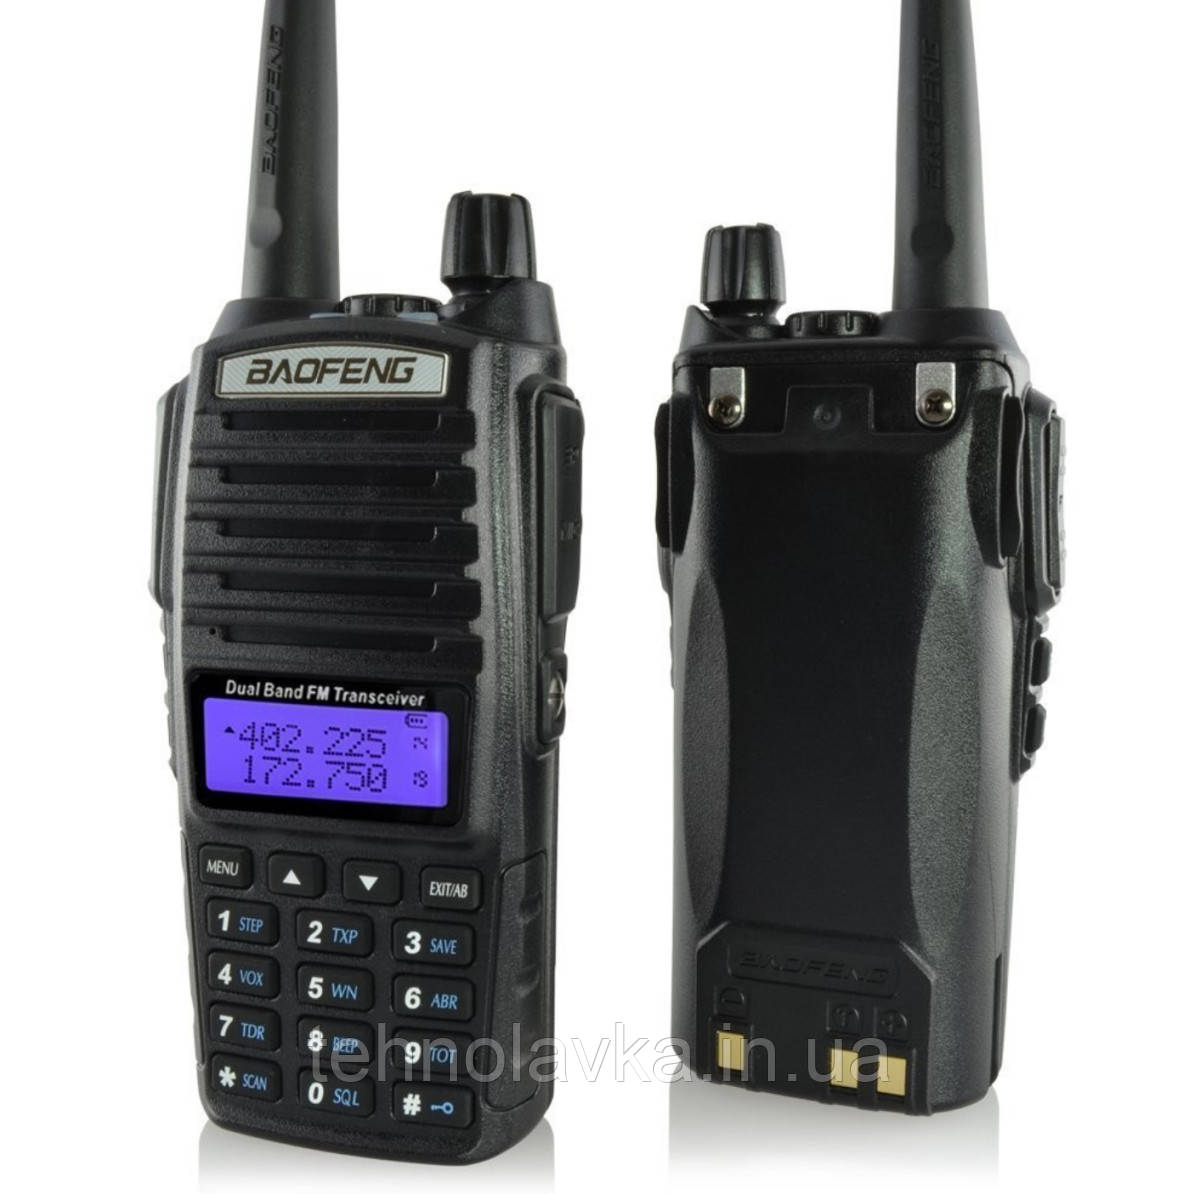 Бездротова рація Baofeng UV82-5W c дисплеєм, FM- радіо, корпус пластмас, частота 400-470MHz, Black